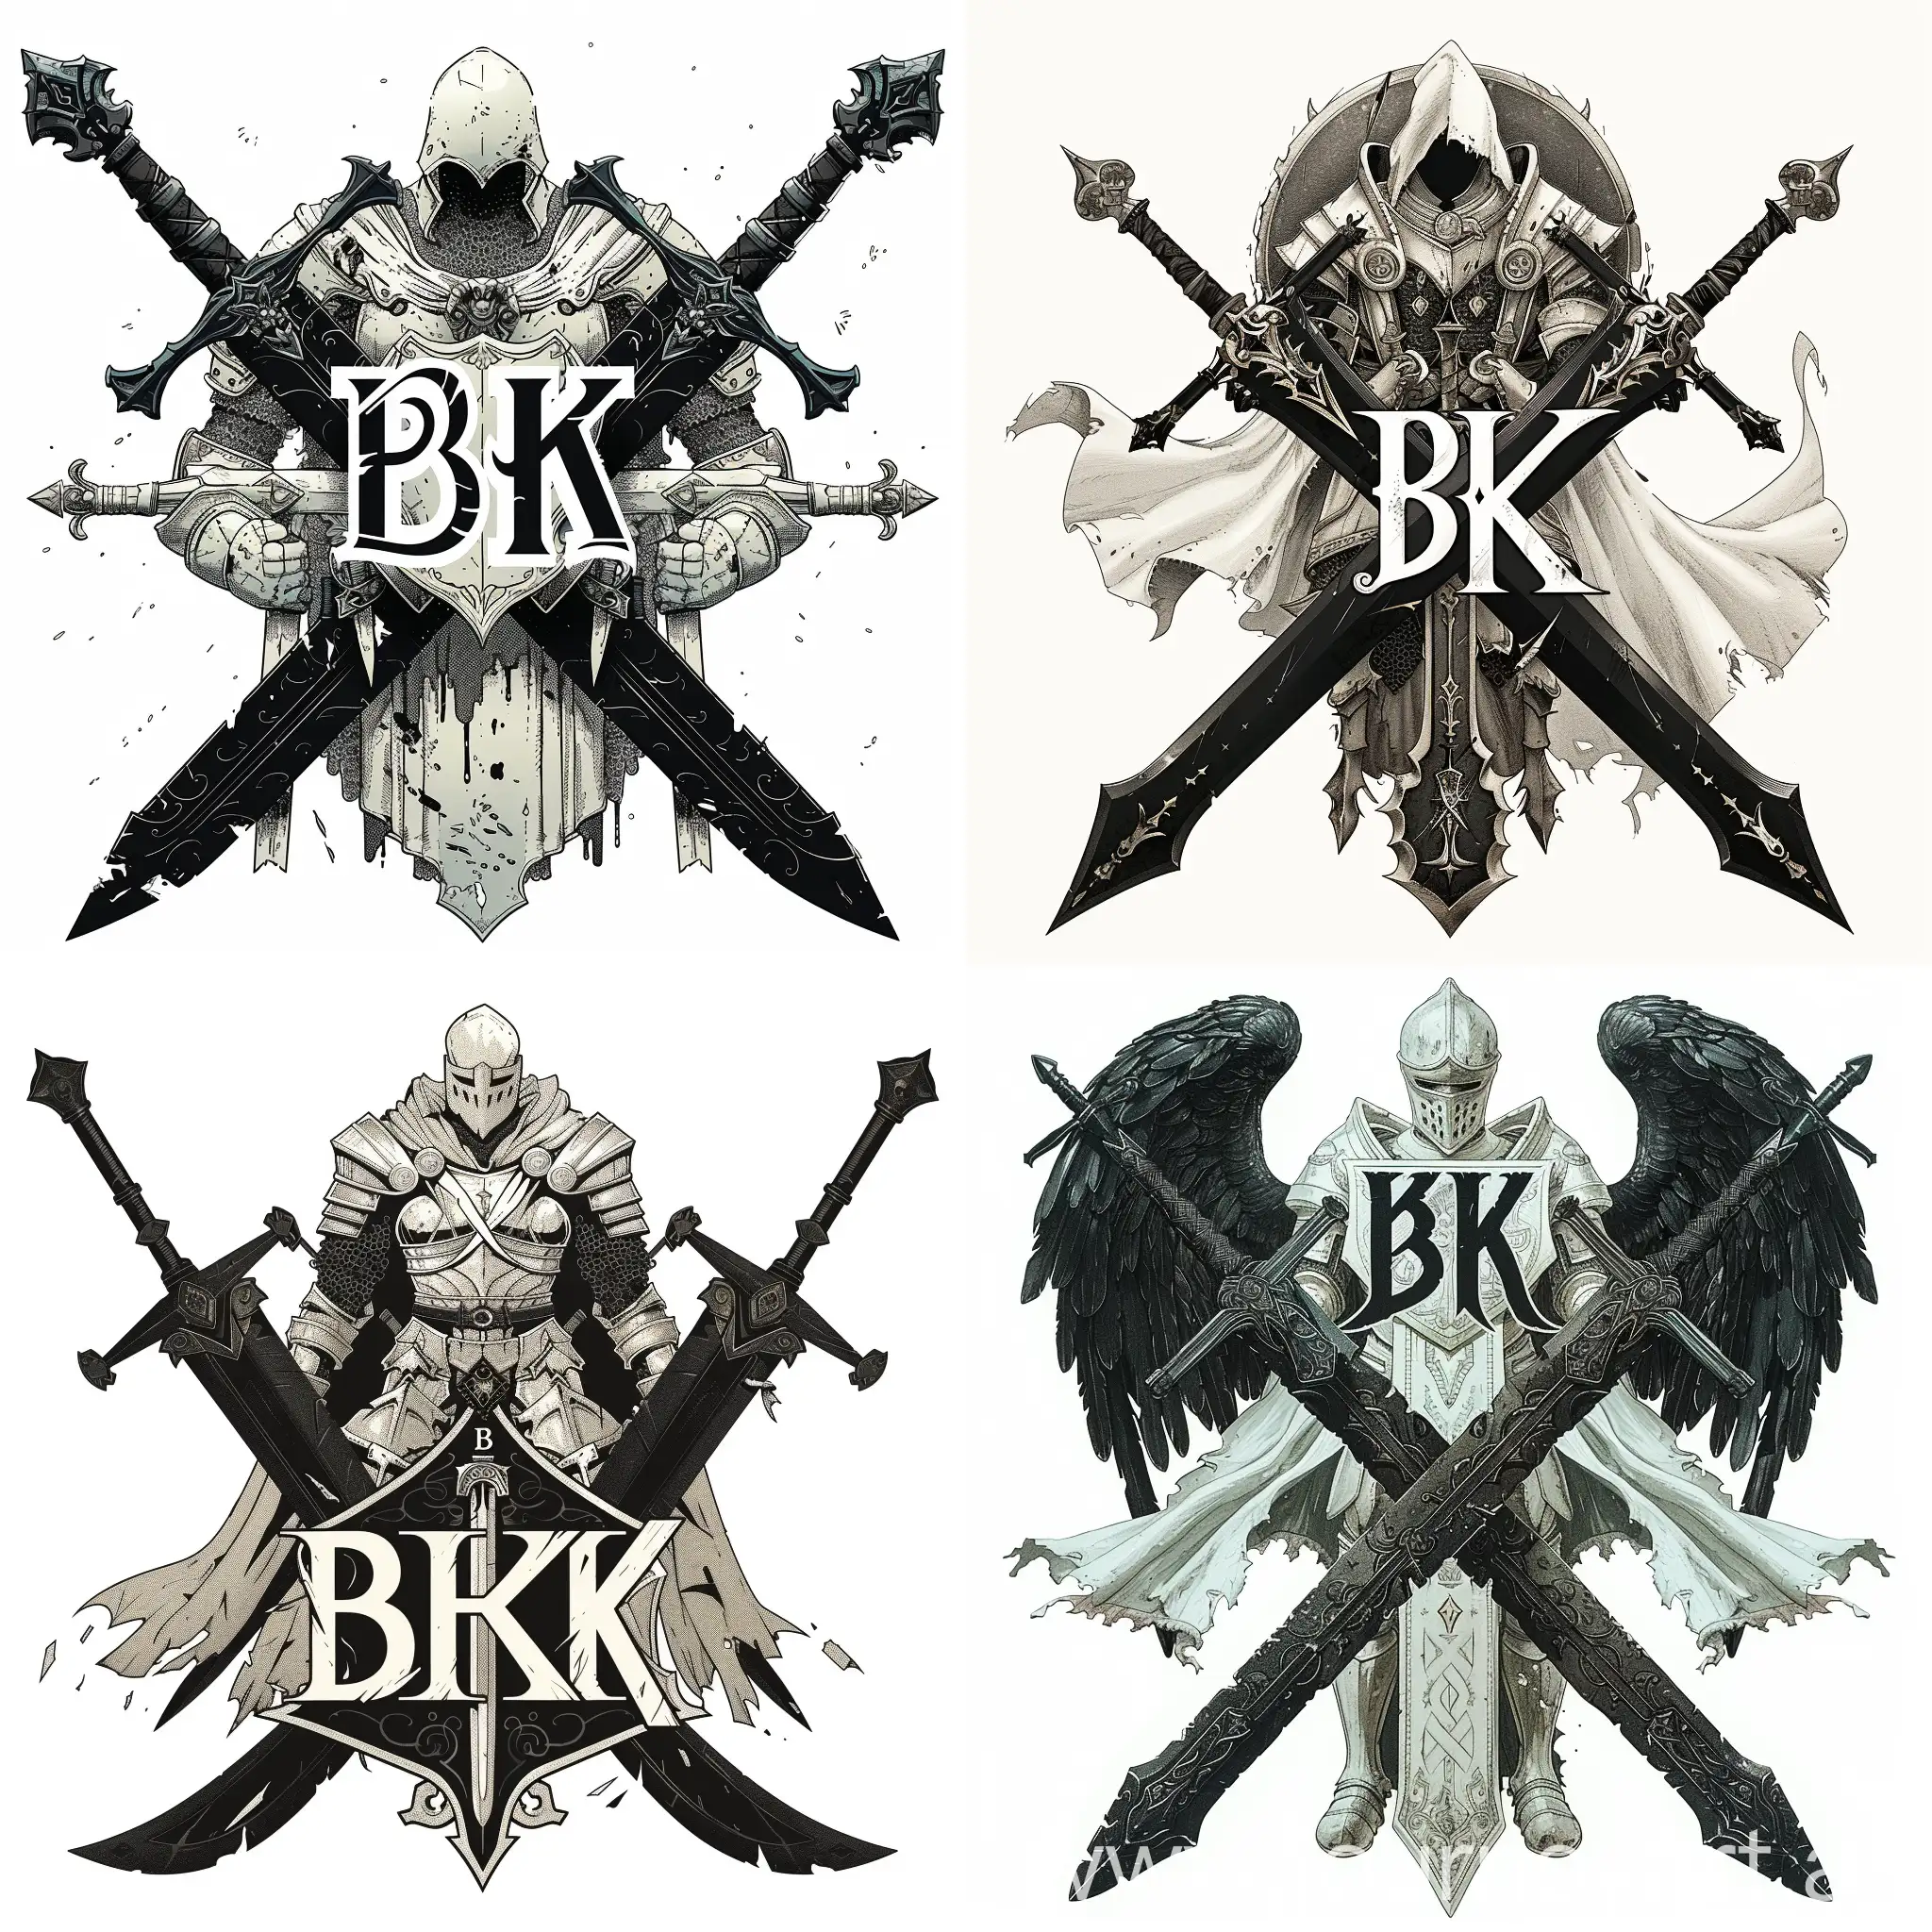 логотип "BK", где буквы "BK" стилизованы в форме двух переплетающихся мечей с орнаментами на лезвиях, черные мечи, между мечами изображен белый рыцарь в боевой позе держащий в руках щит и меч, рыцарь представлен в доспехах с символикой, отражающей его мощь и благородство, цветовая гамма черный мечи, белый рыцаря, готический шрифт "WK" в форме мечей, --quality 3 --s 300